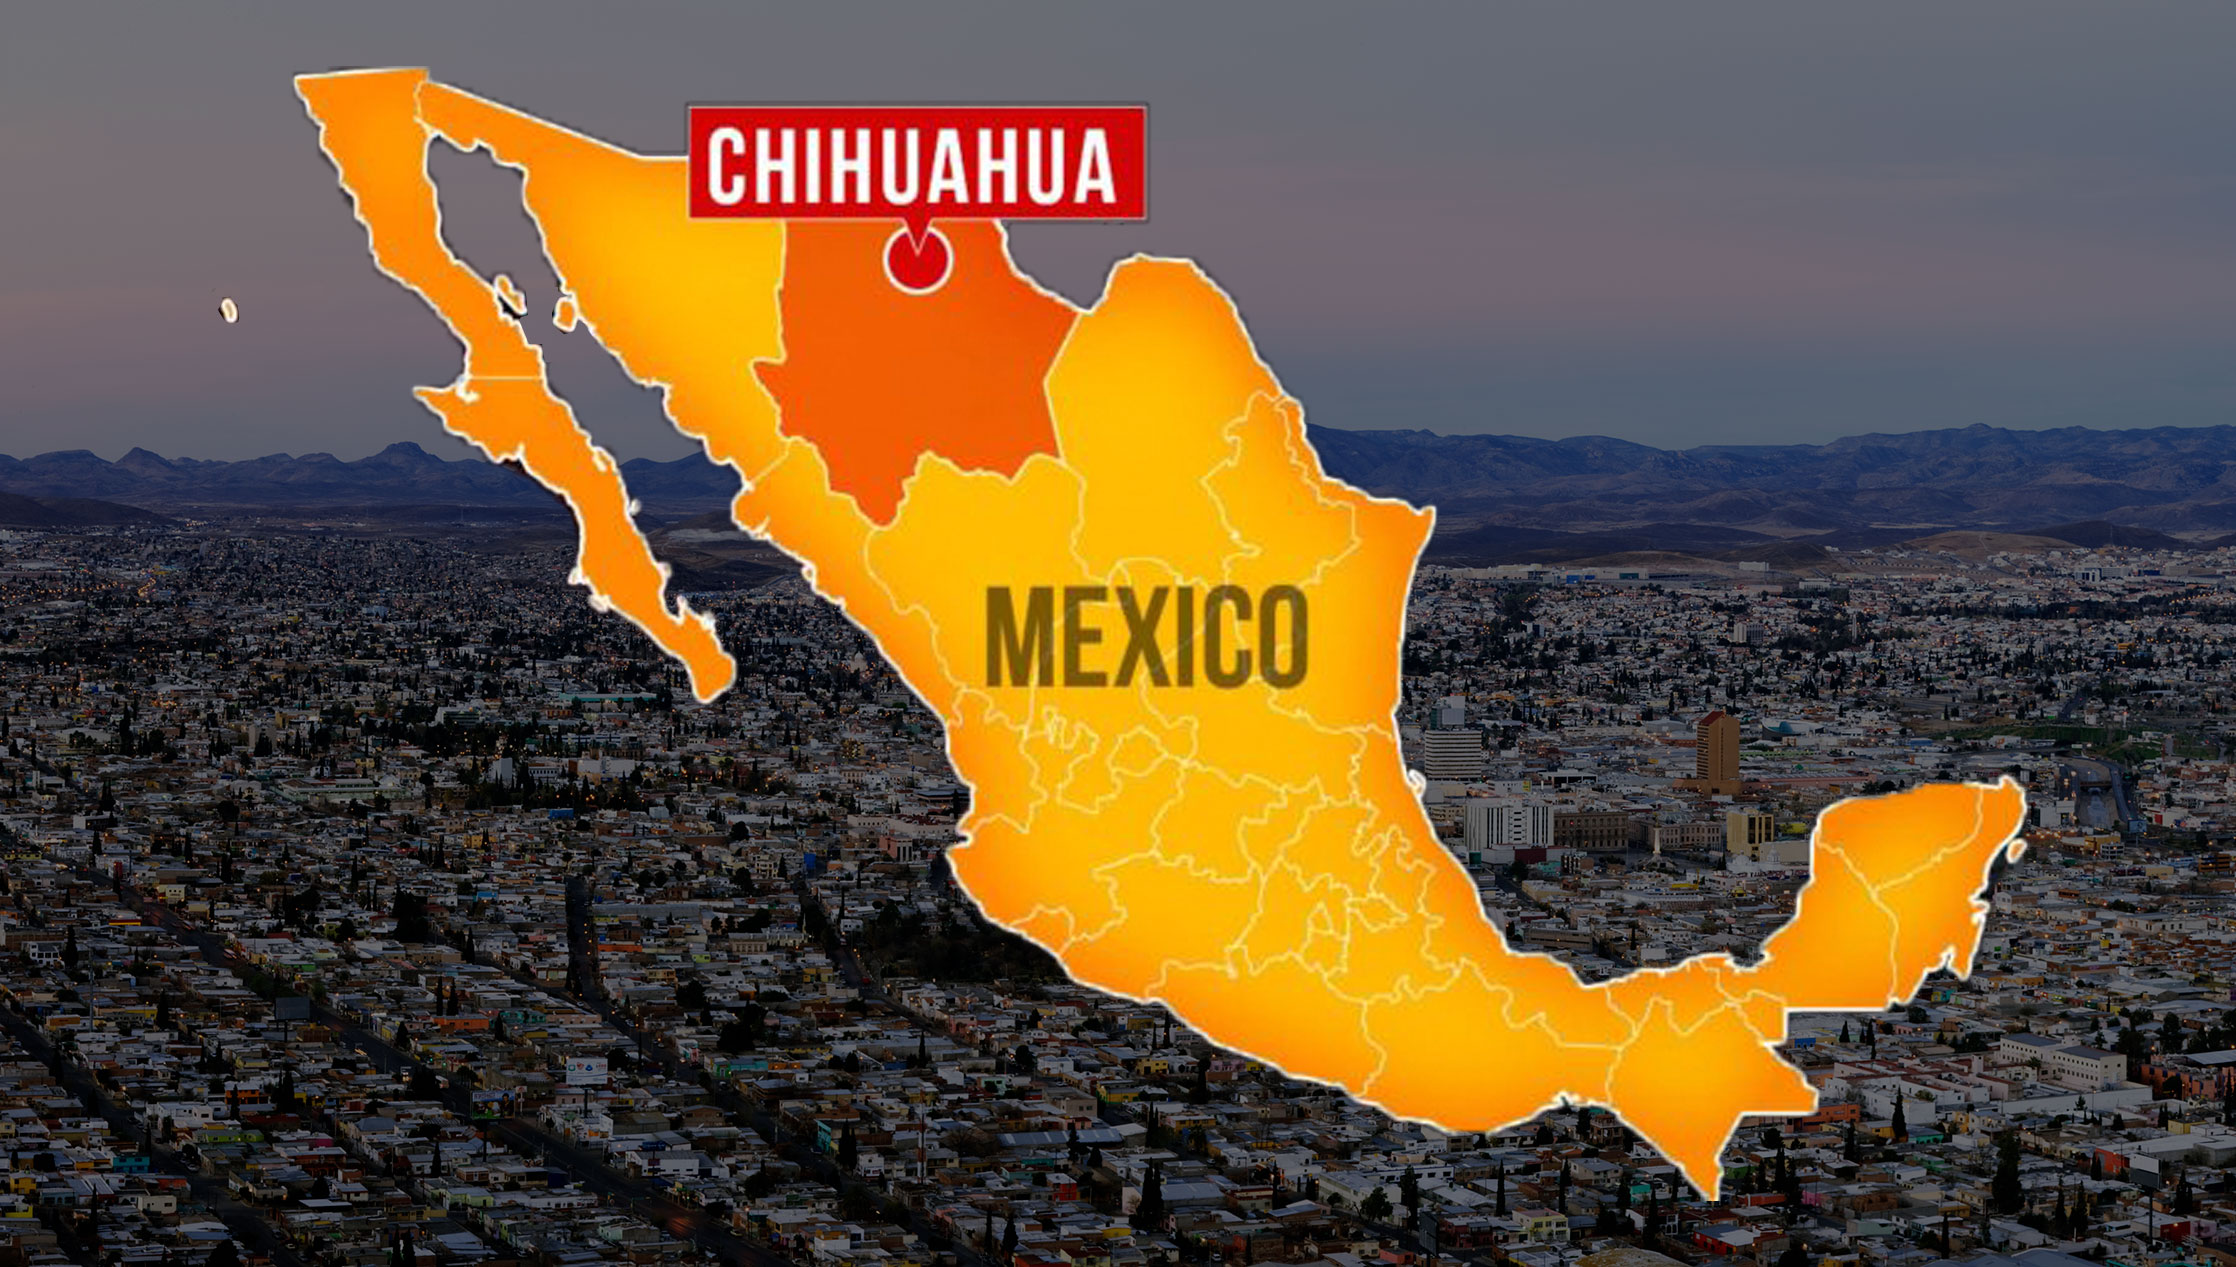 ¿Cúal es el estado más grande de México? Conoce el estado más grande.